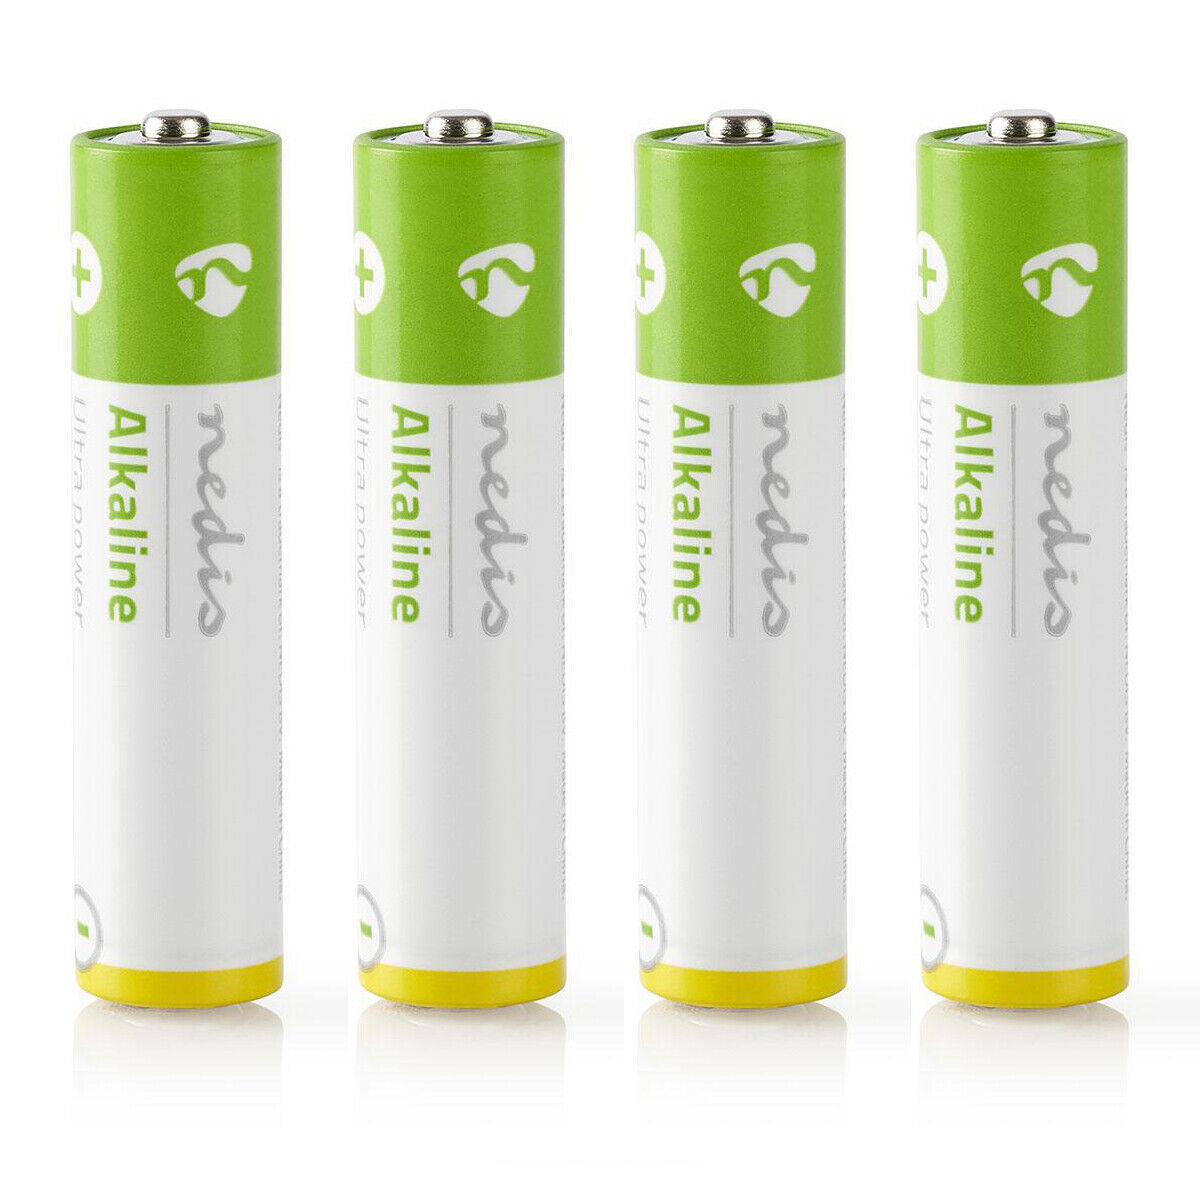 4x AAA Batterien 1,5V / 4 Stück LR03 / Marken Alkali Batterie im 4er Pack